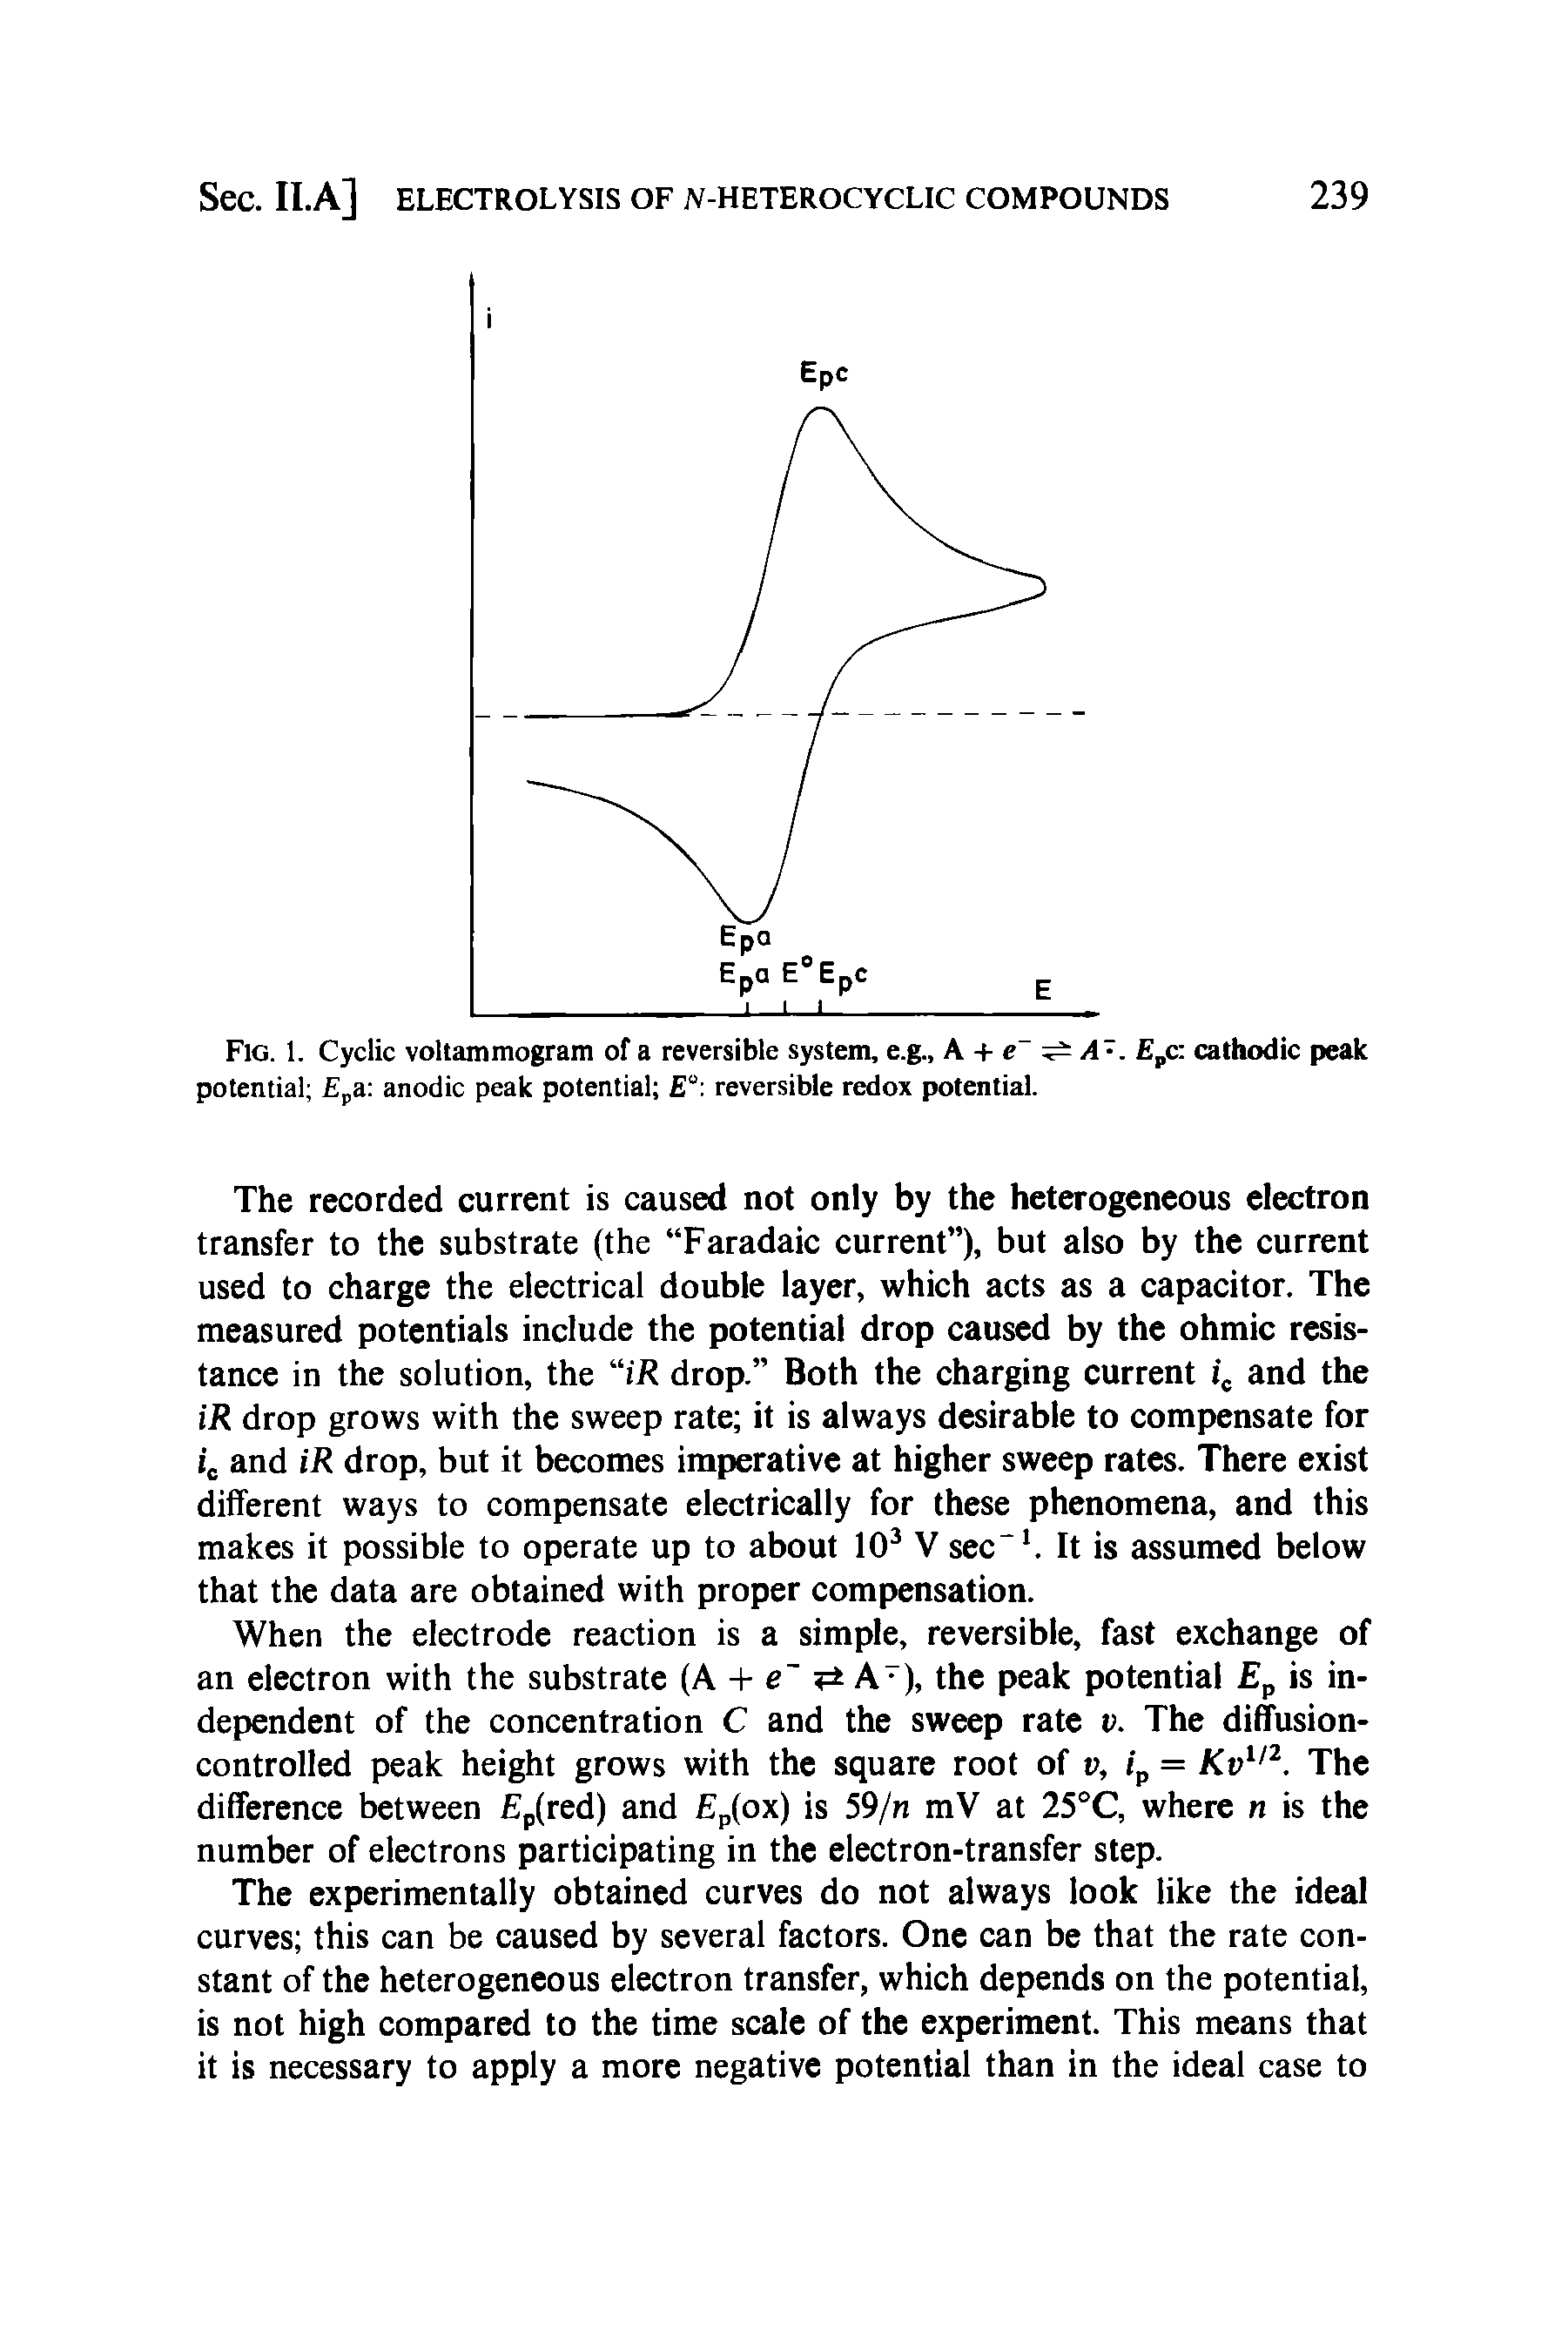 Fig. 1. Cyclic voltammogram of a reversible system, e.g., A + e a . Epc cathodic peak potential a anodic peak potential E reversible redox potential.